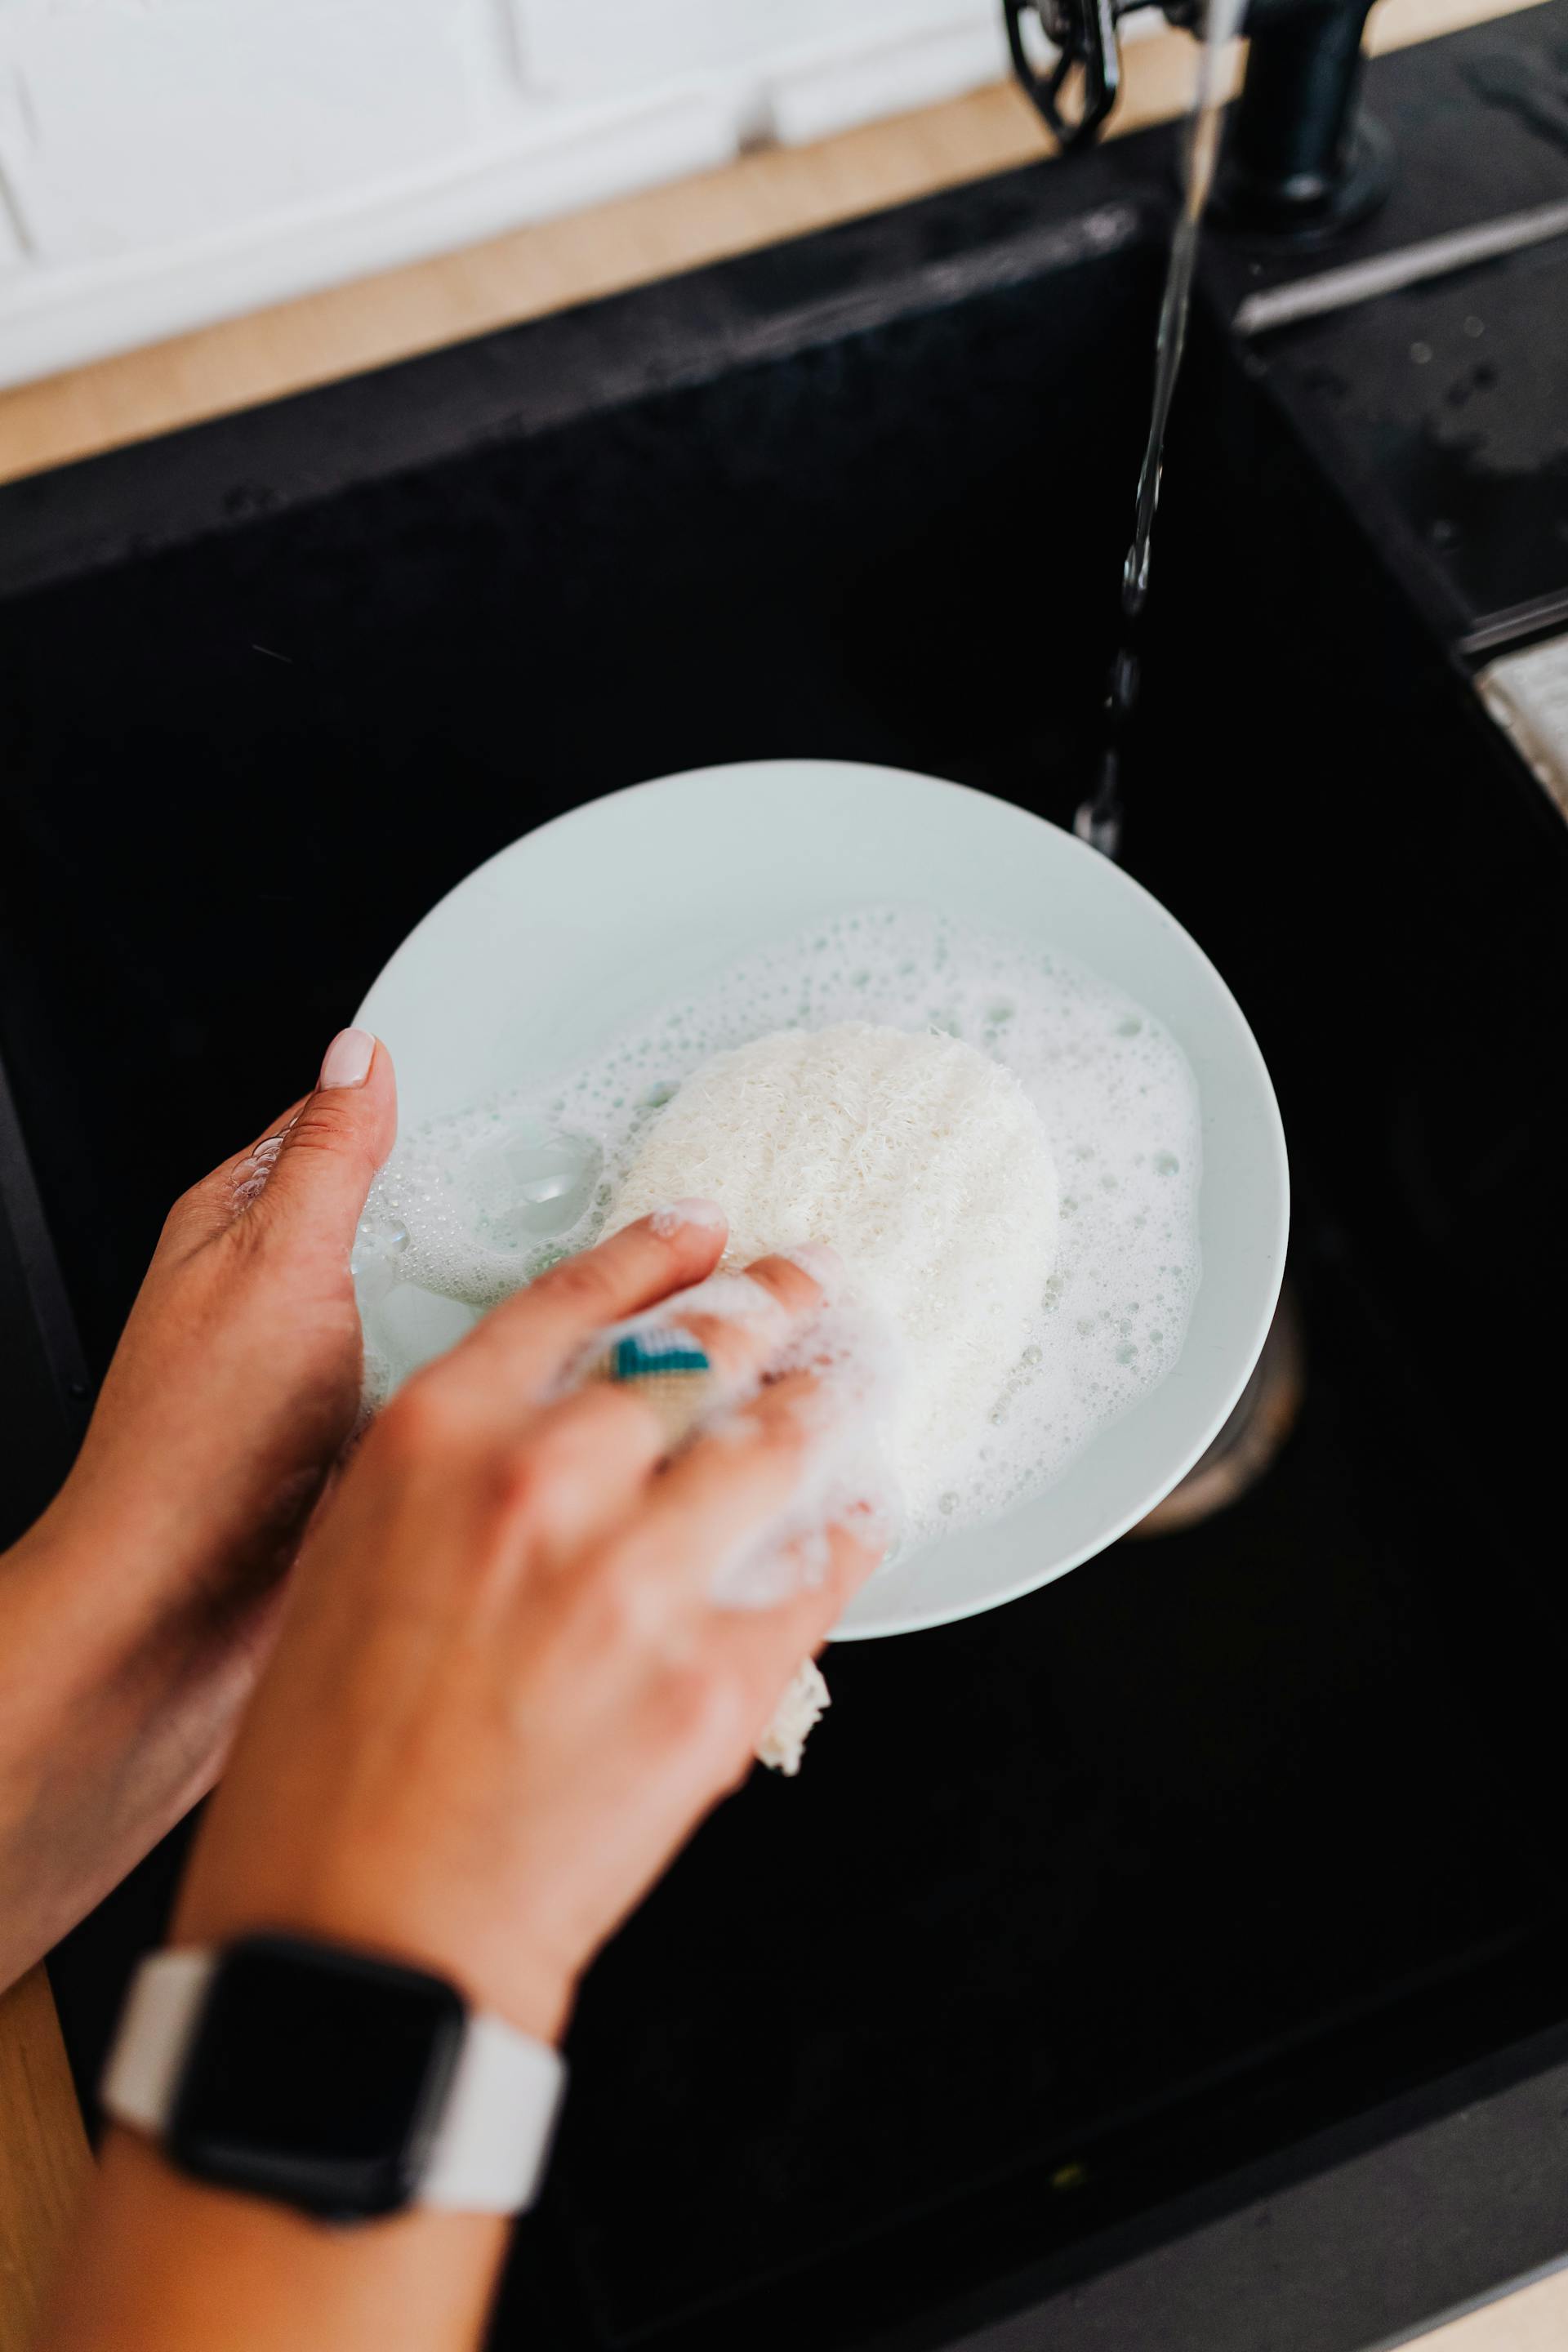 Eine Person beim Geschirrspülen | Quelle: Pexels